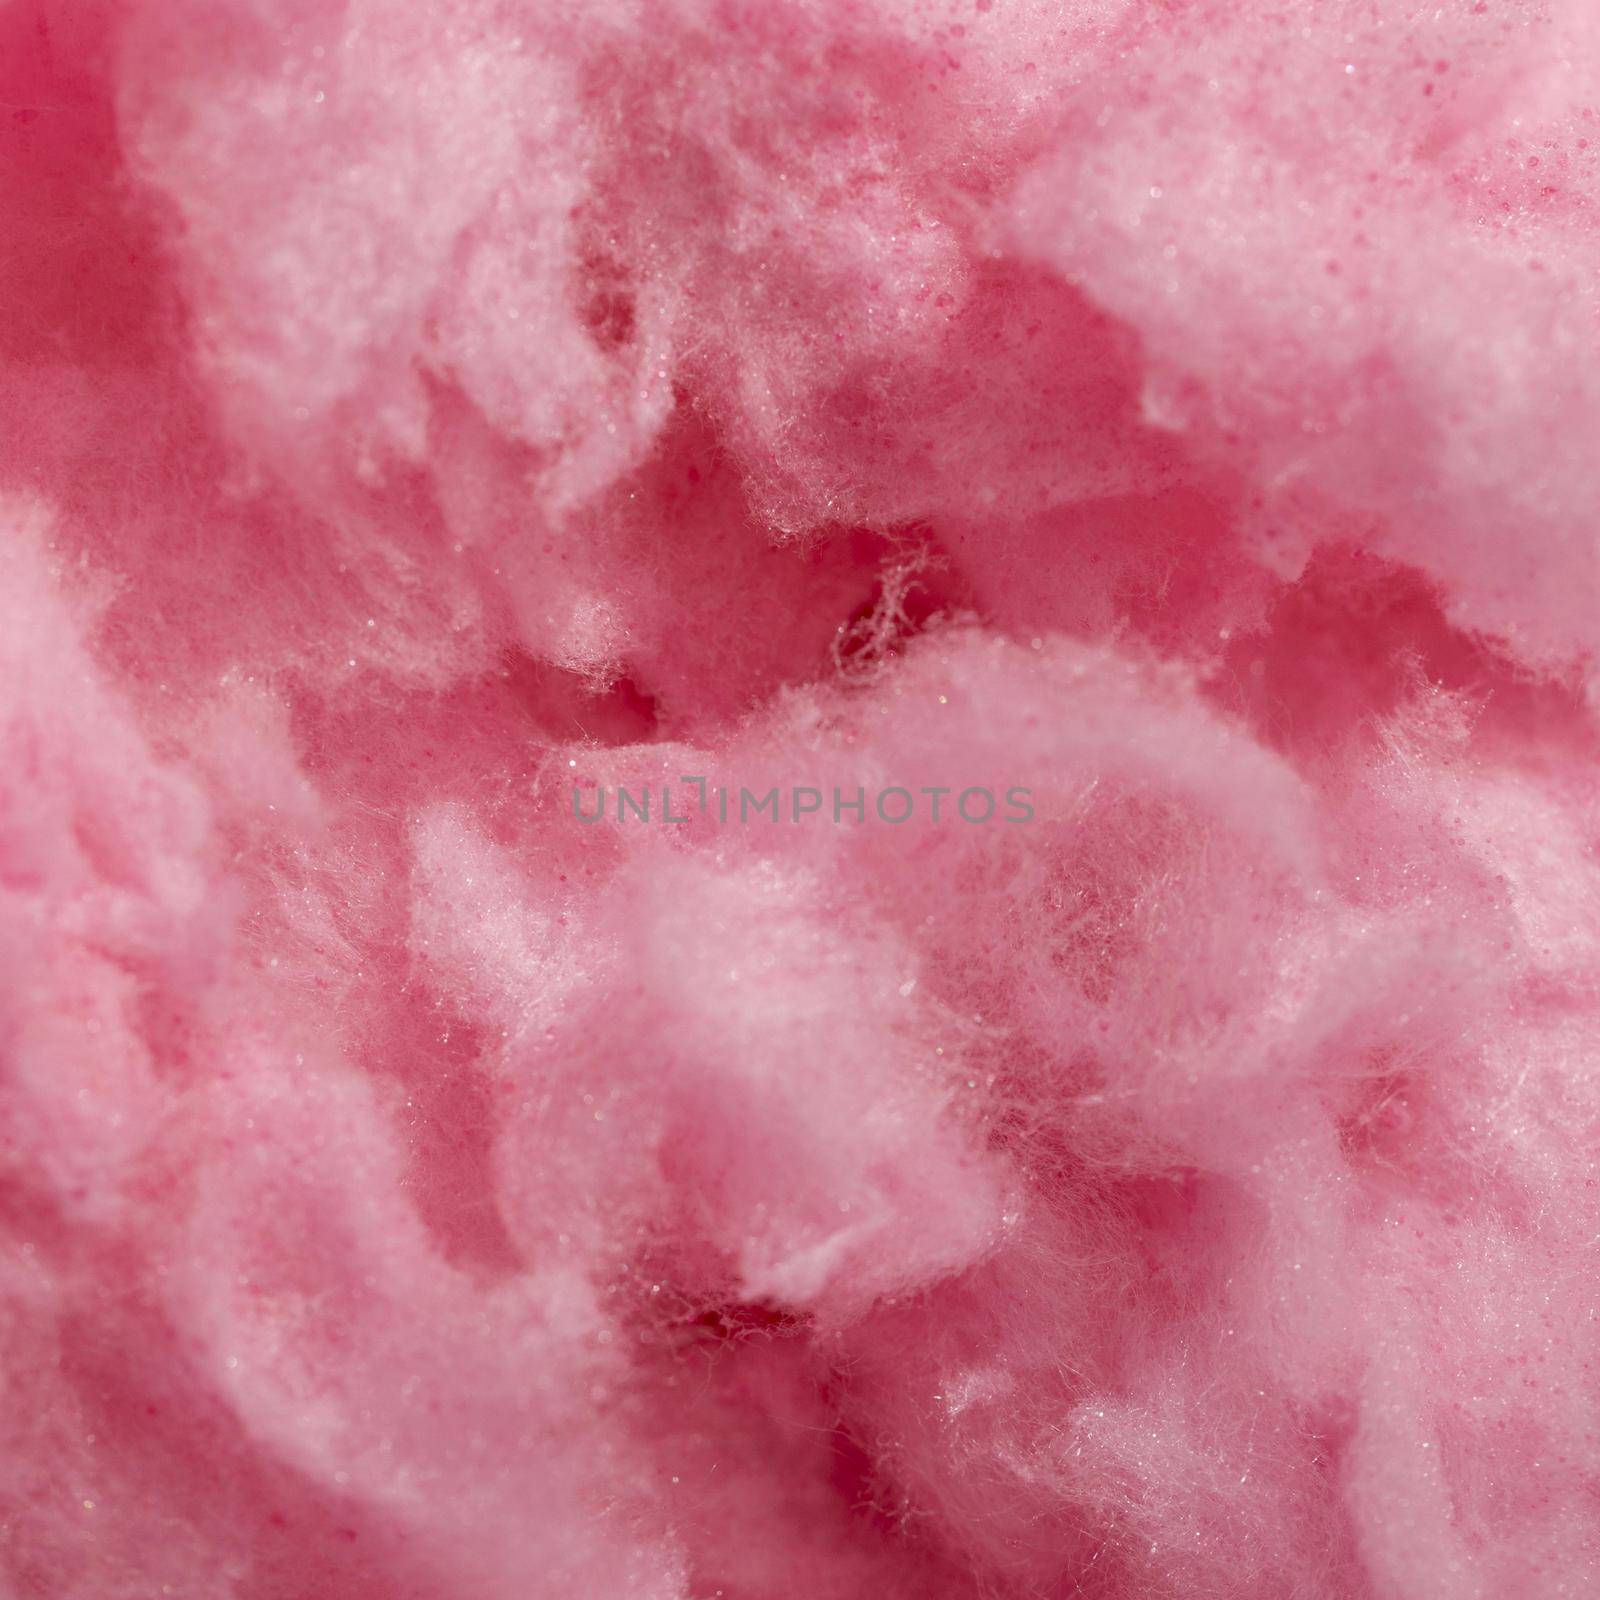 flat lay pink cotton candy by Zahard